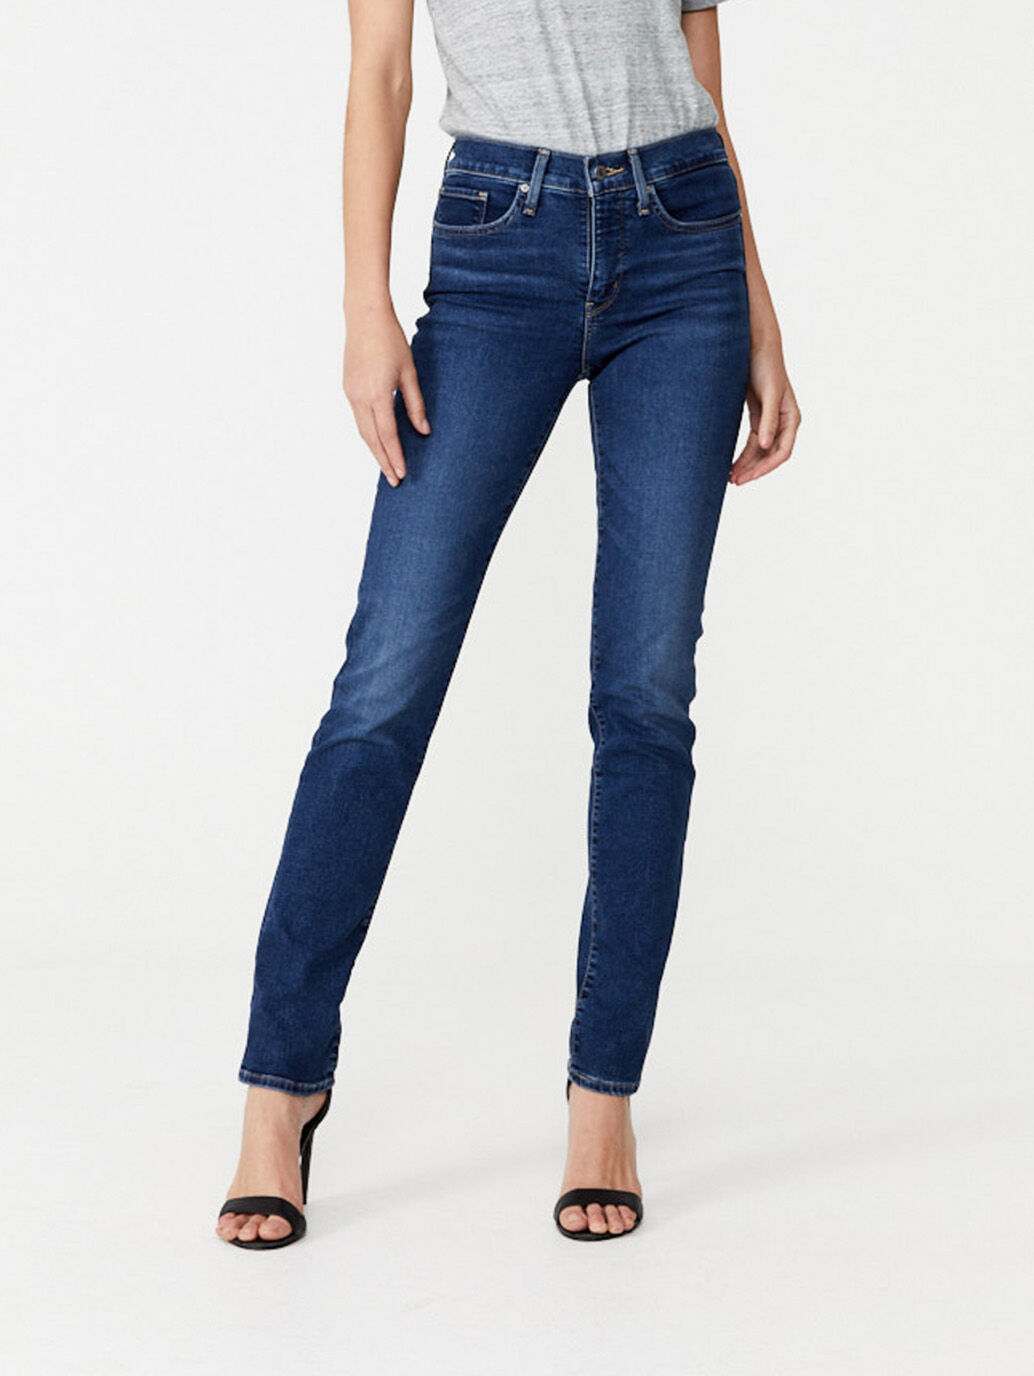 levis 101 jeans womens